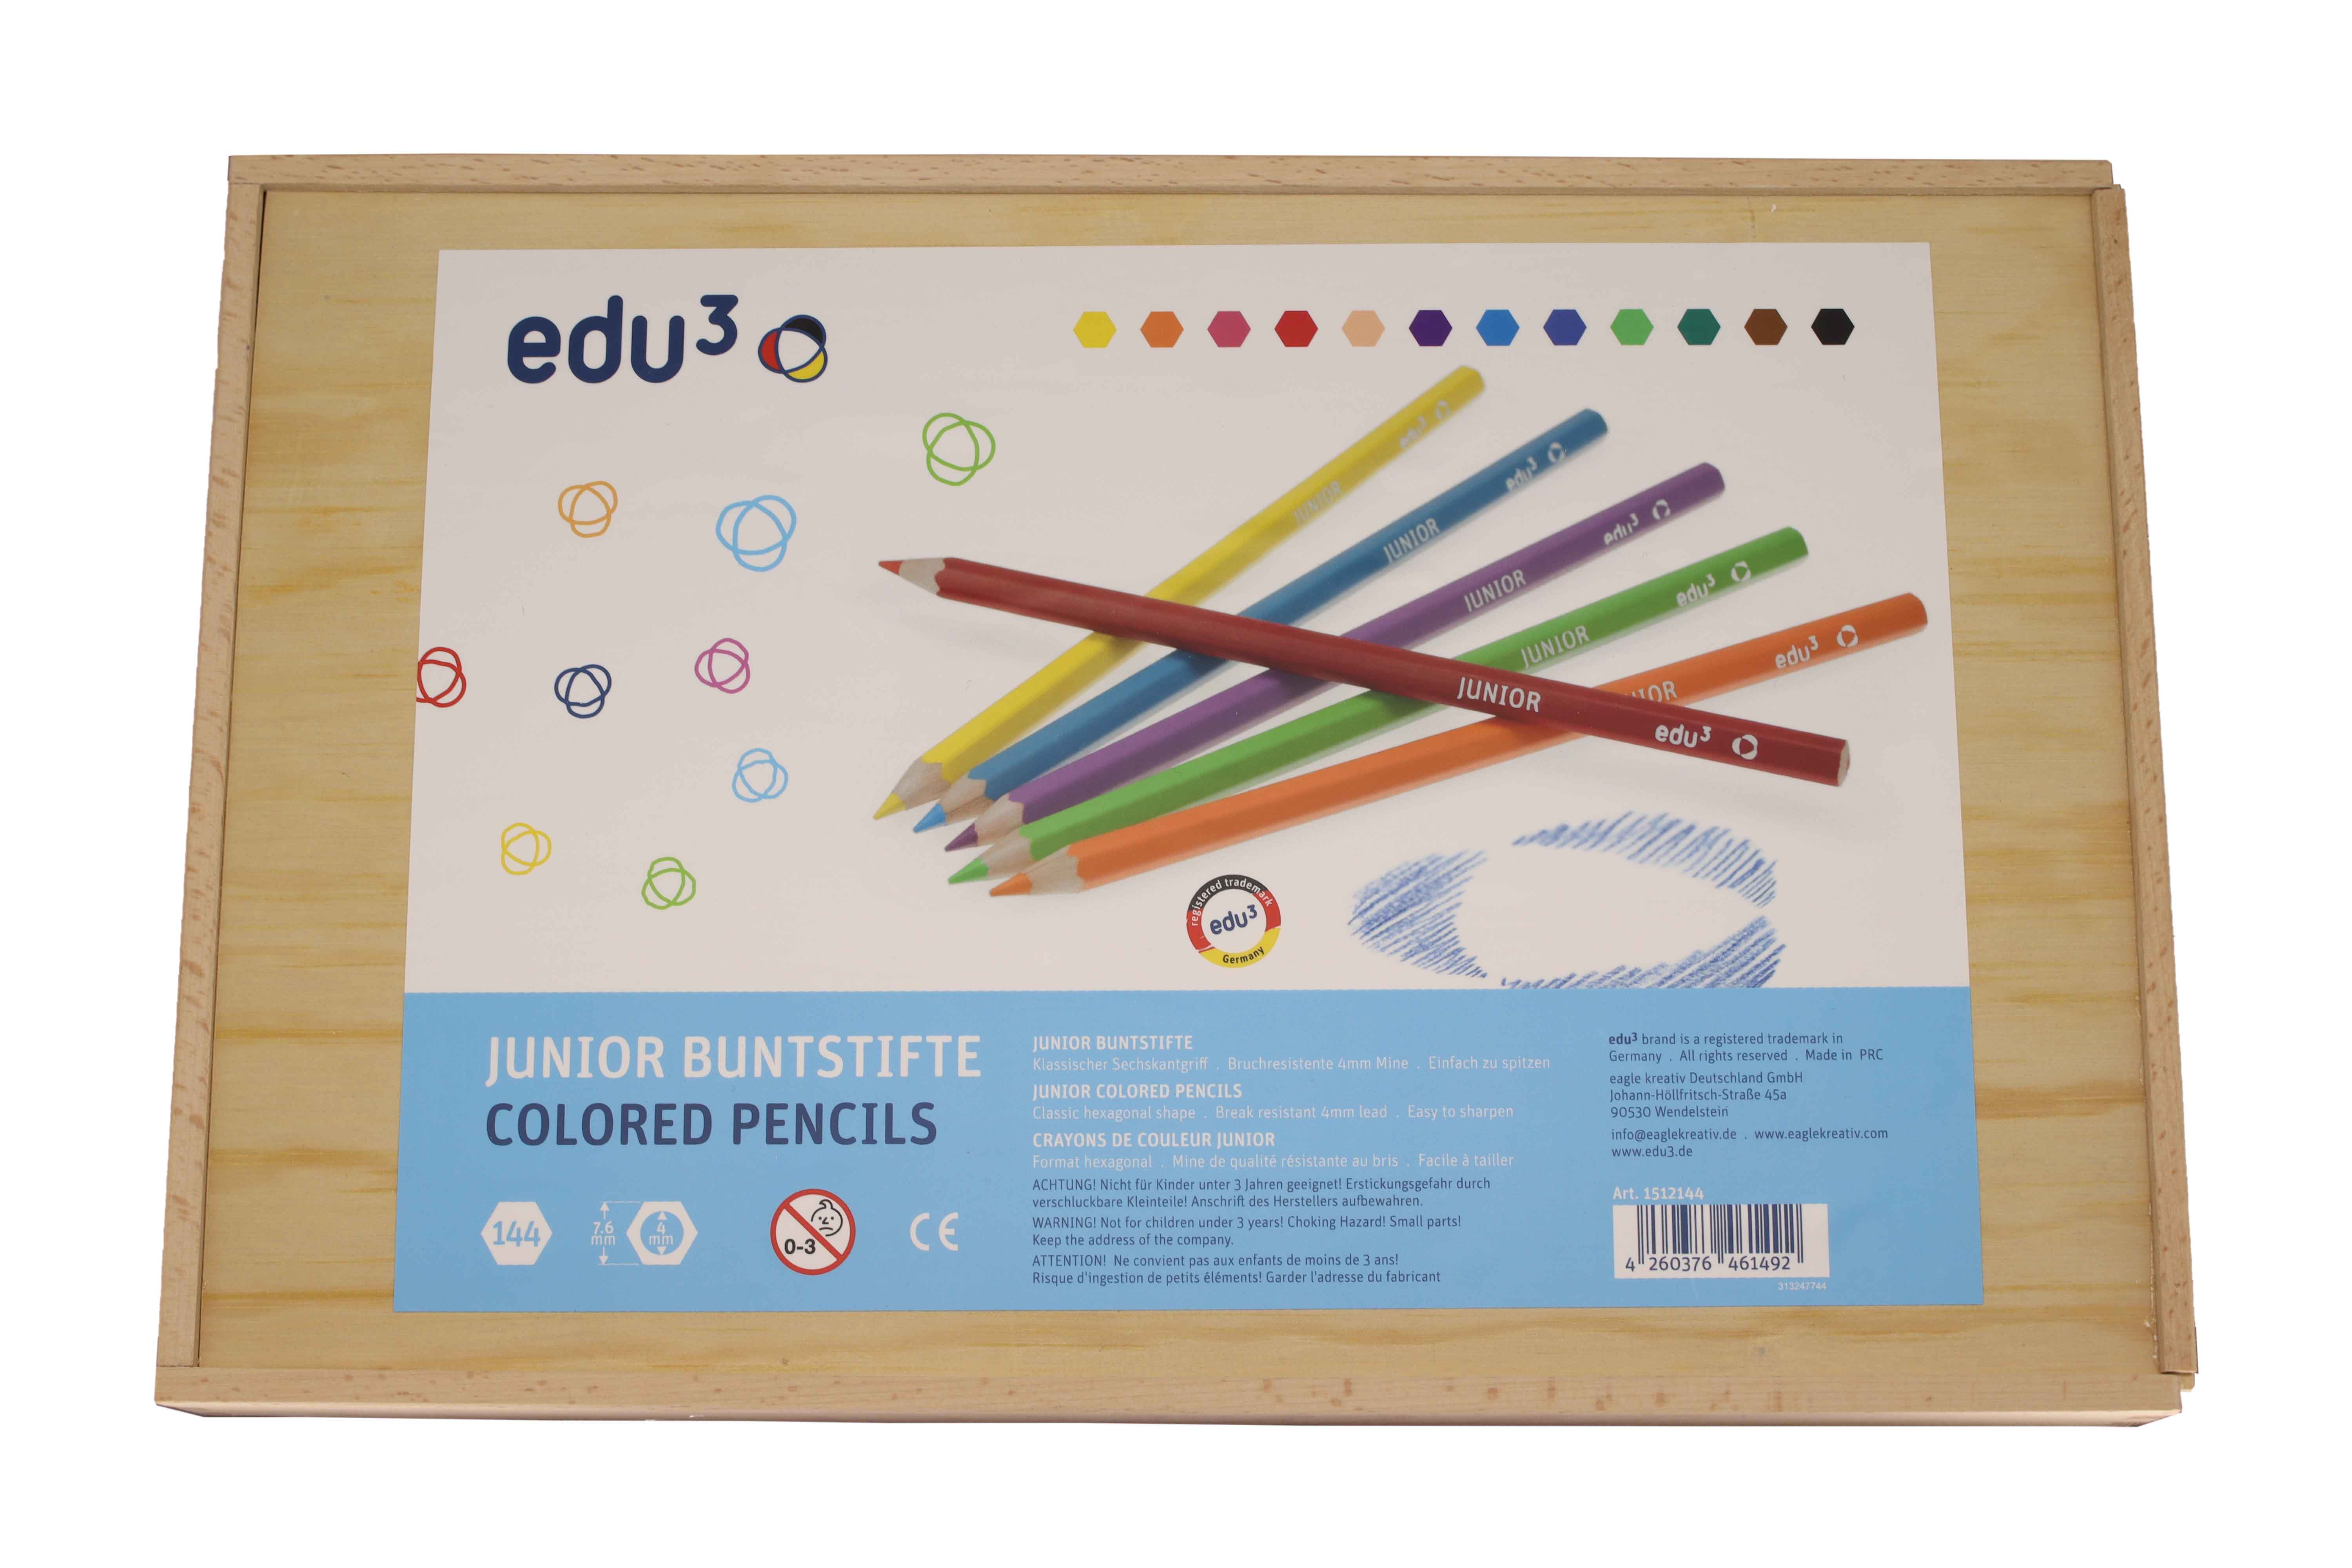 edu³ JUNIOR colored pencils hex wooden box